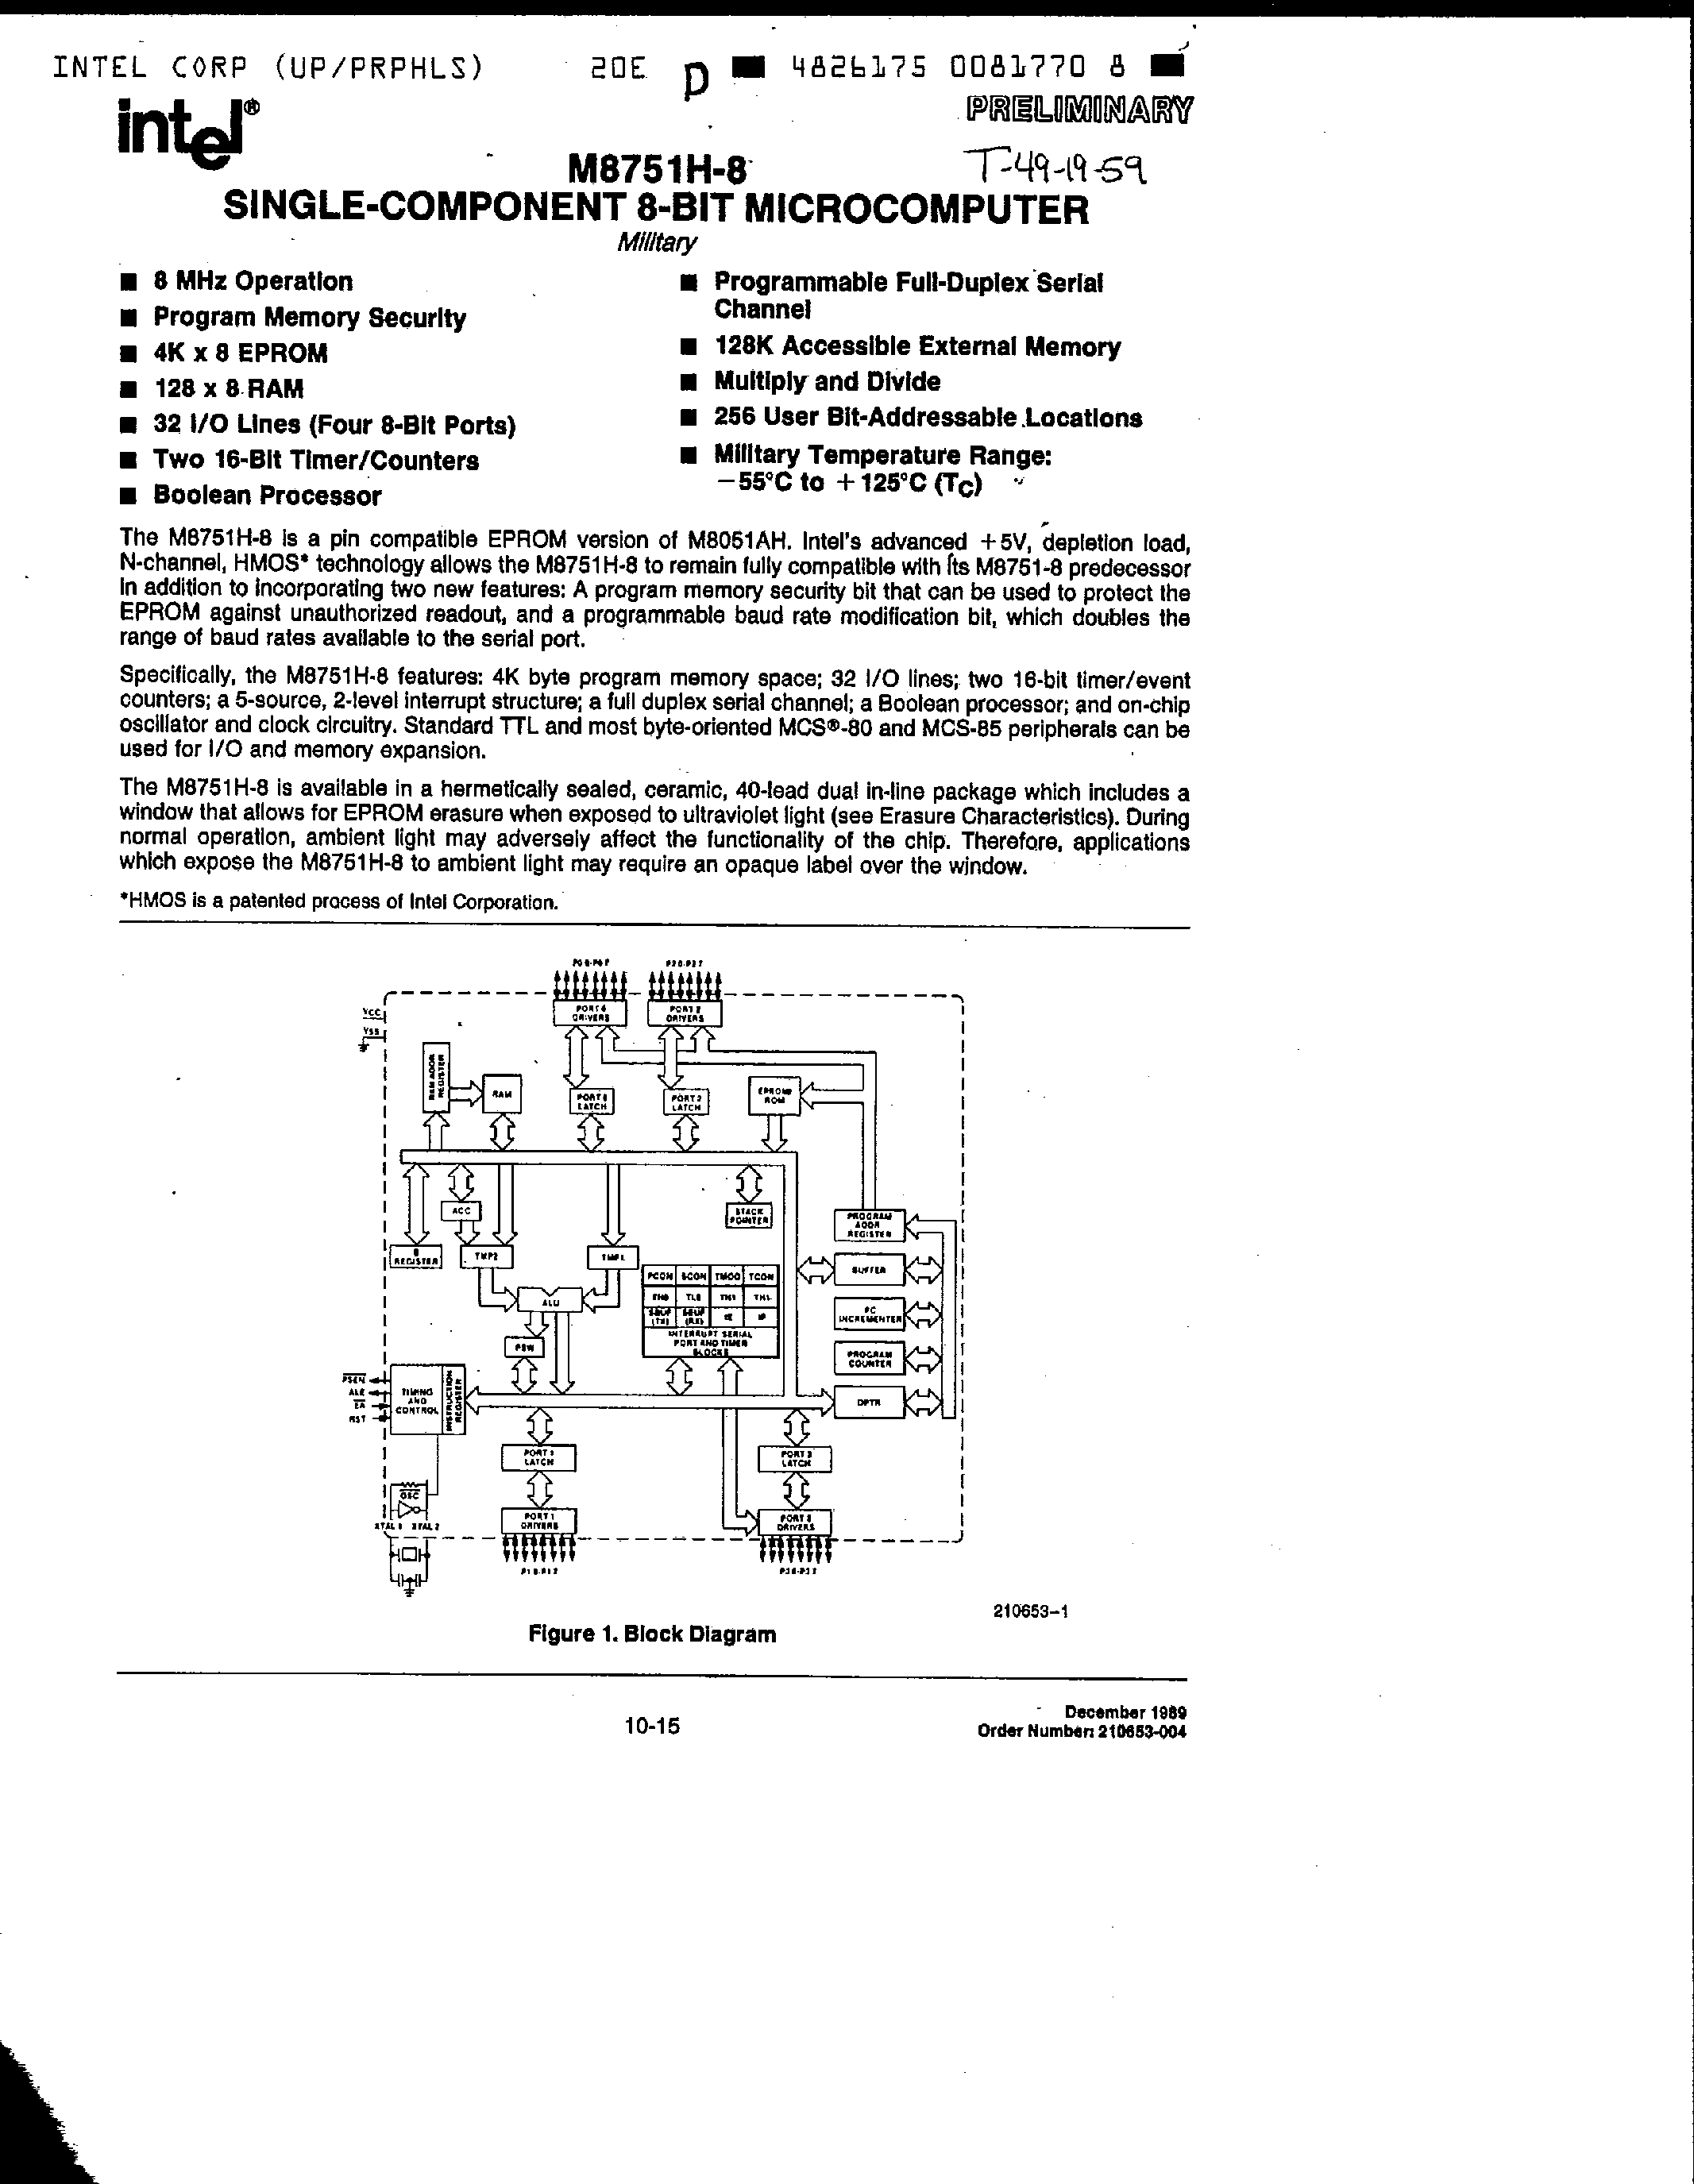 Даташит MD8751H-8 - Single-Component 8 Bit Microcomputer страница 1